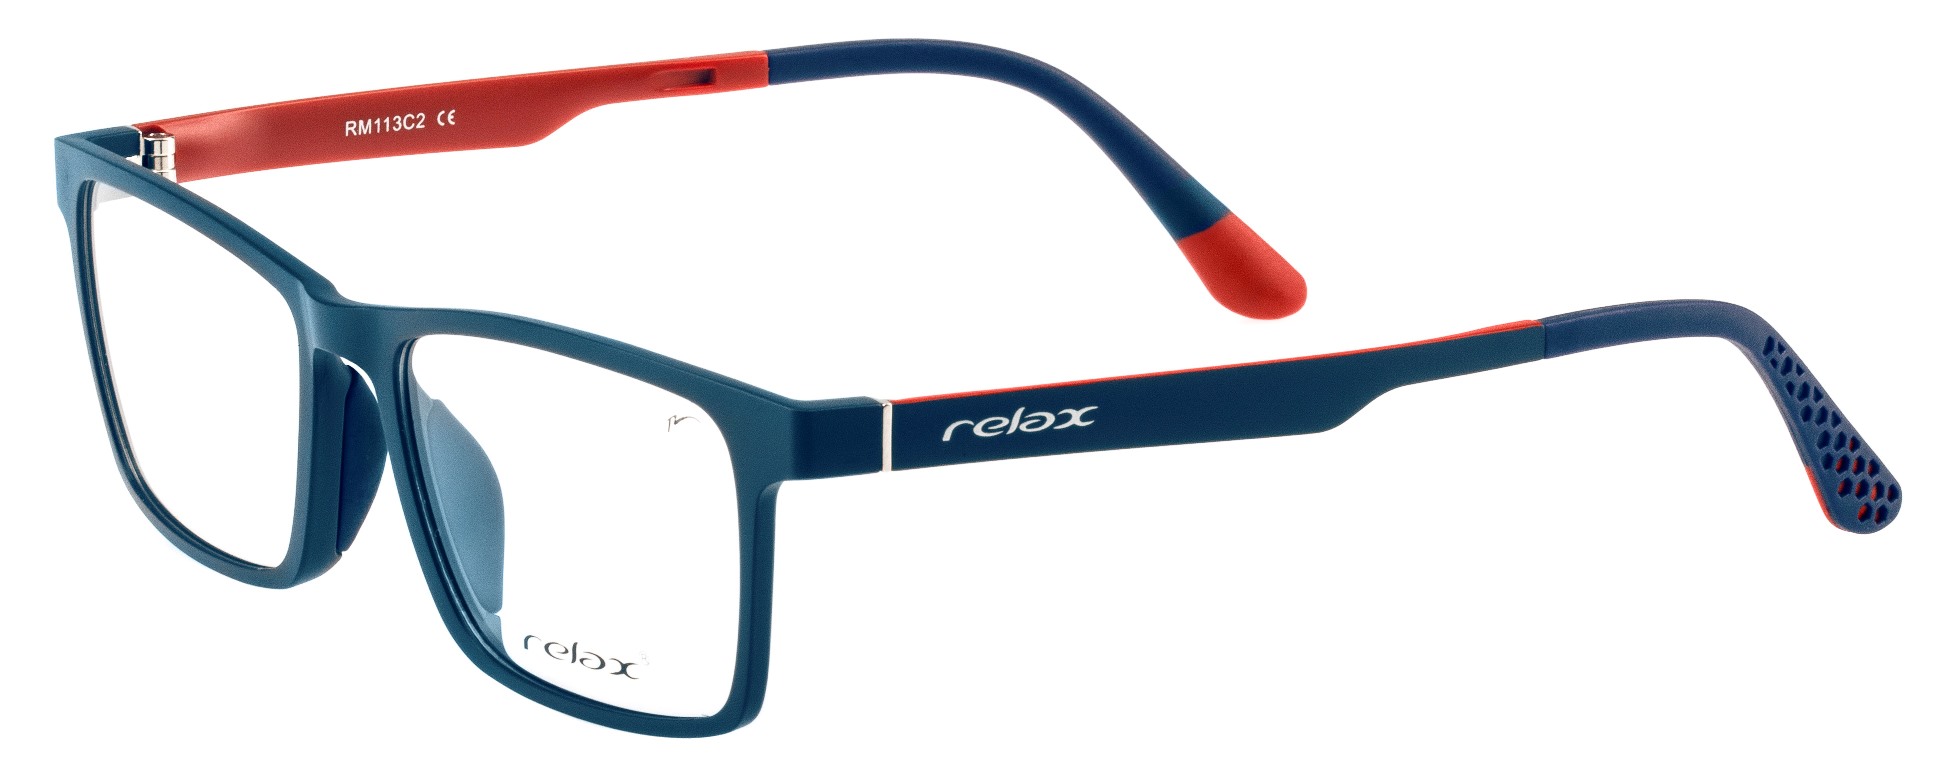 Dioptrické brýle Relax Dafi RM113C2 -